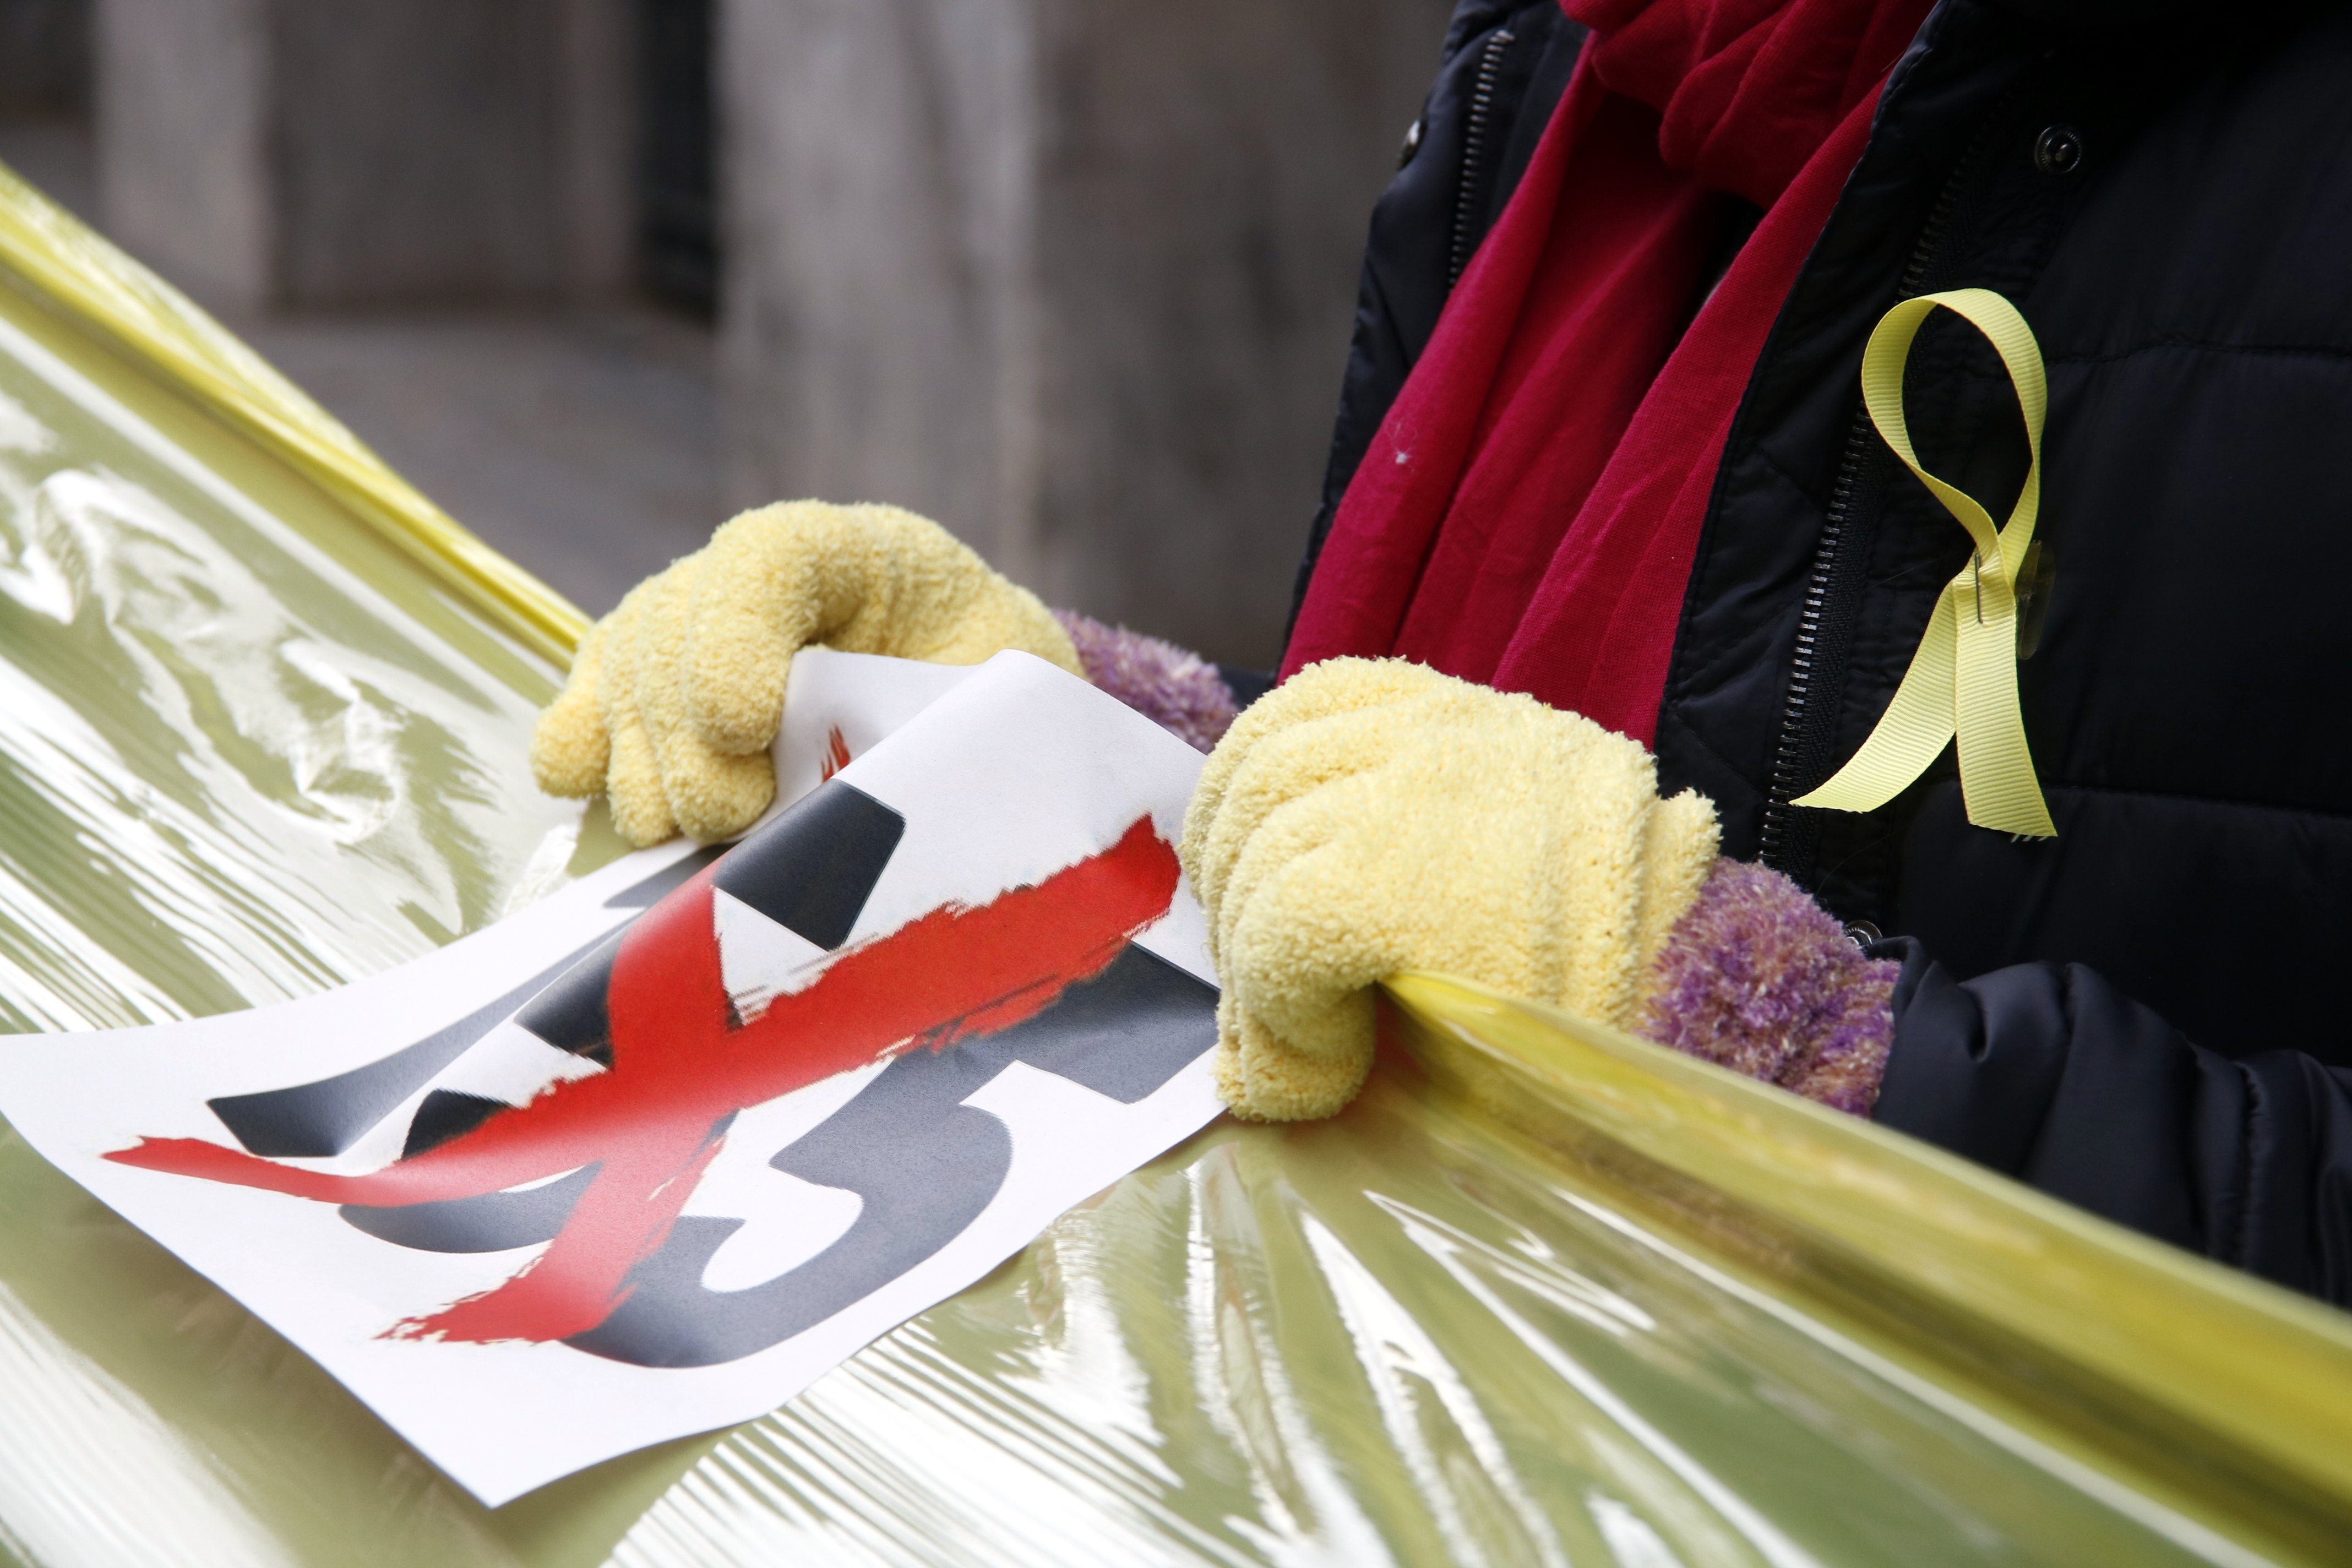 Un ajuntament obliga a demanar permís per penjar llaços grocs i banderes espanyoles